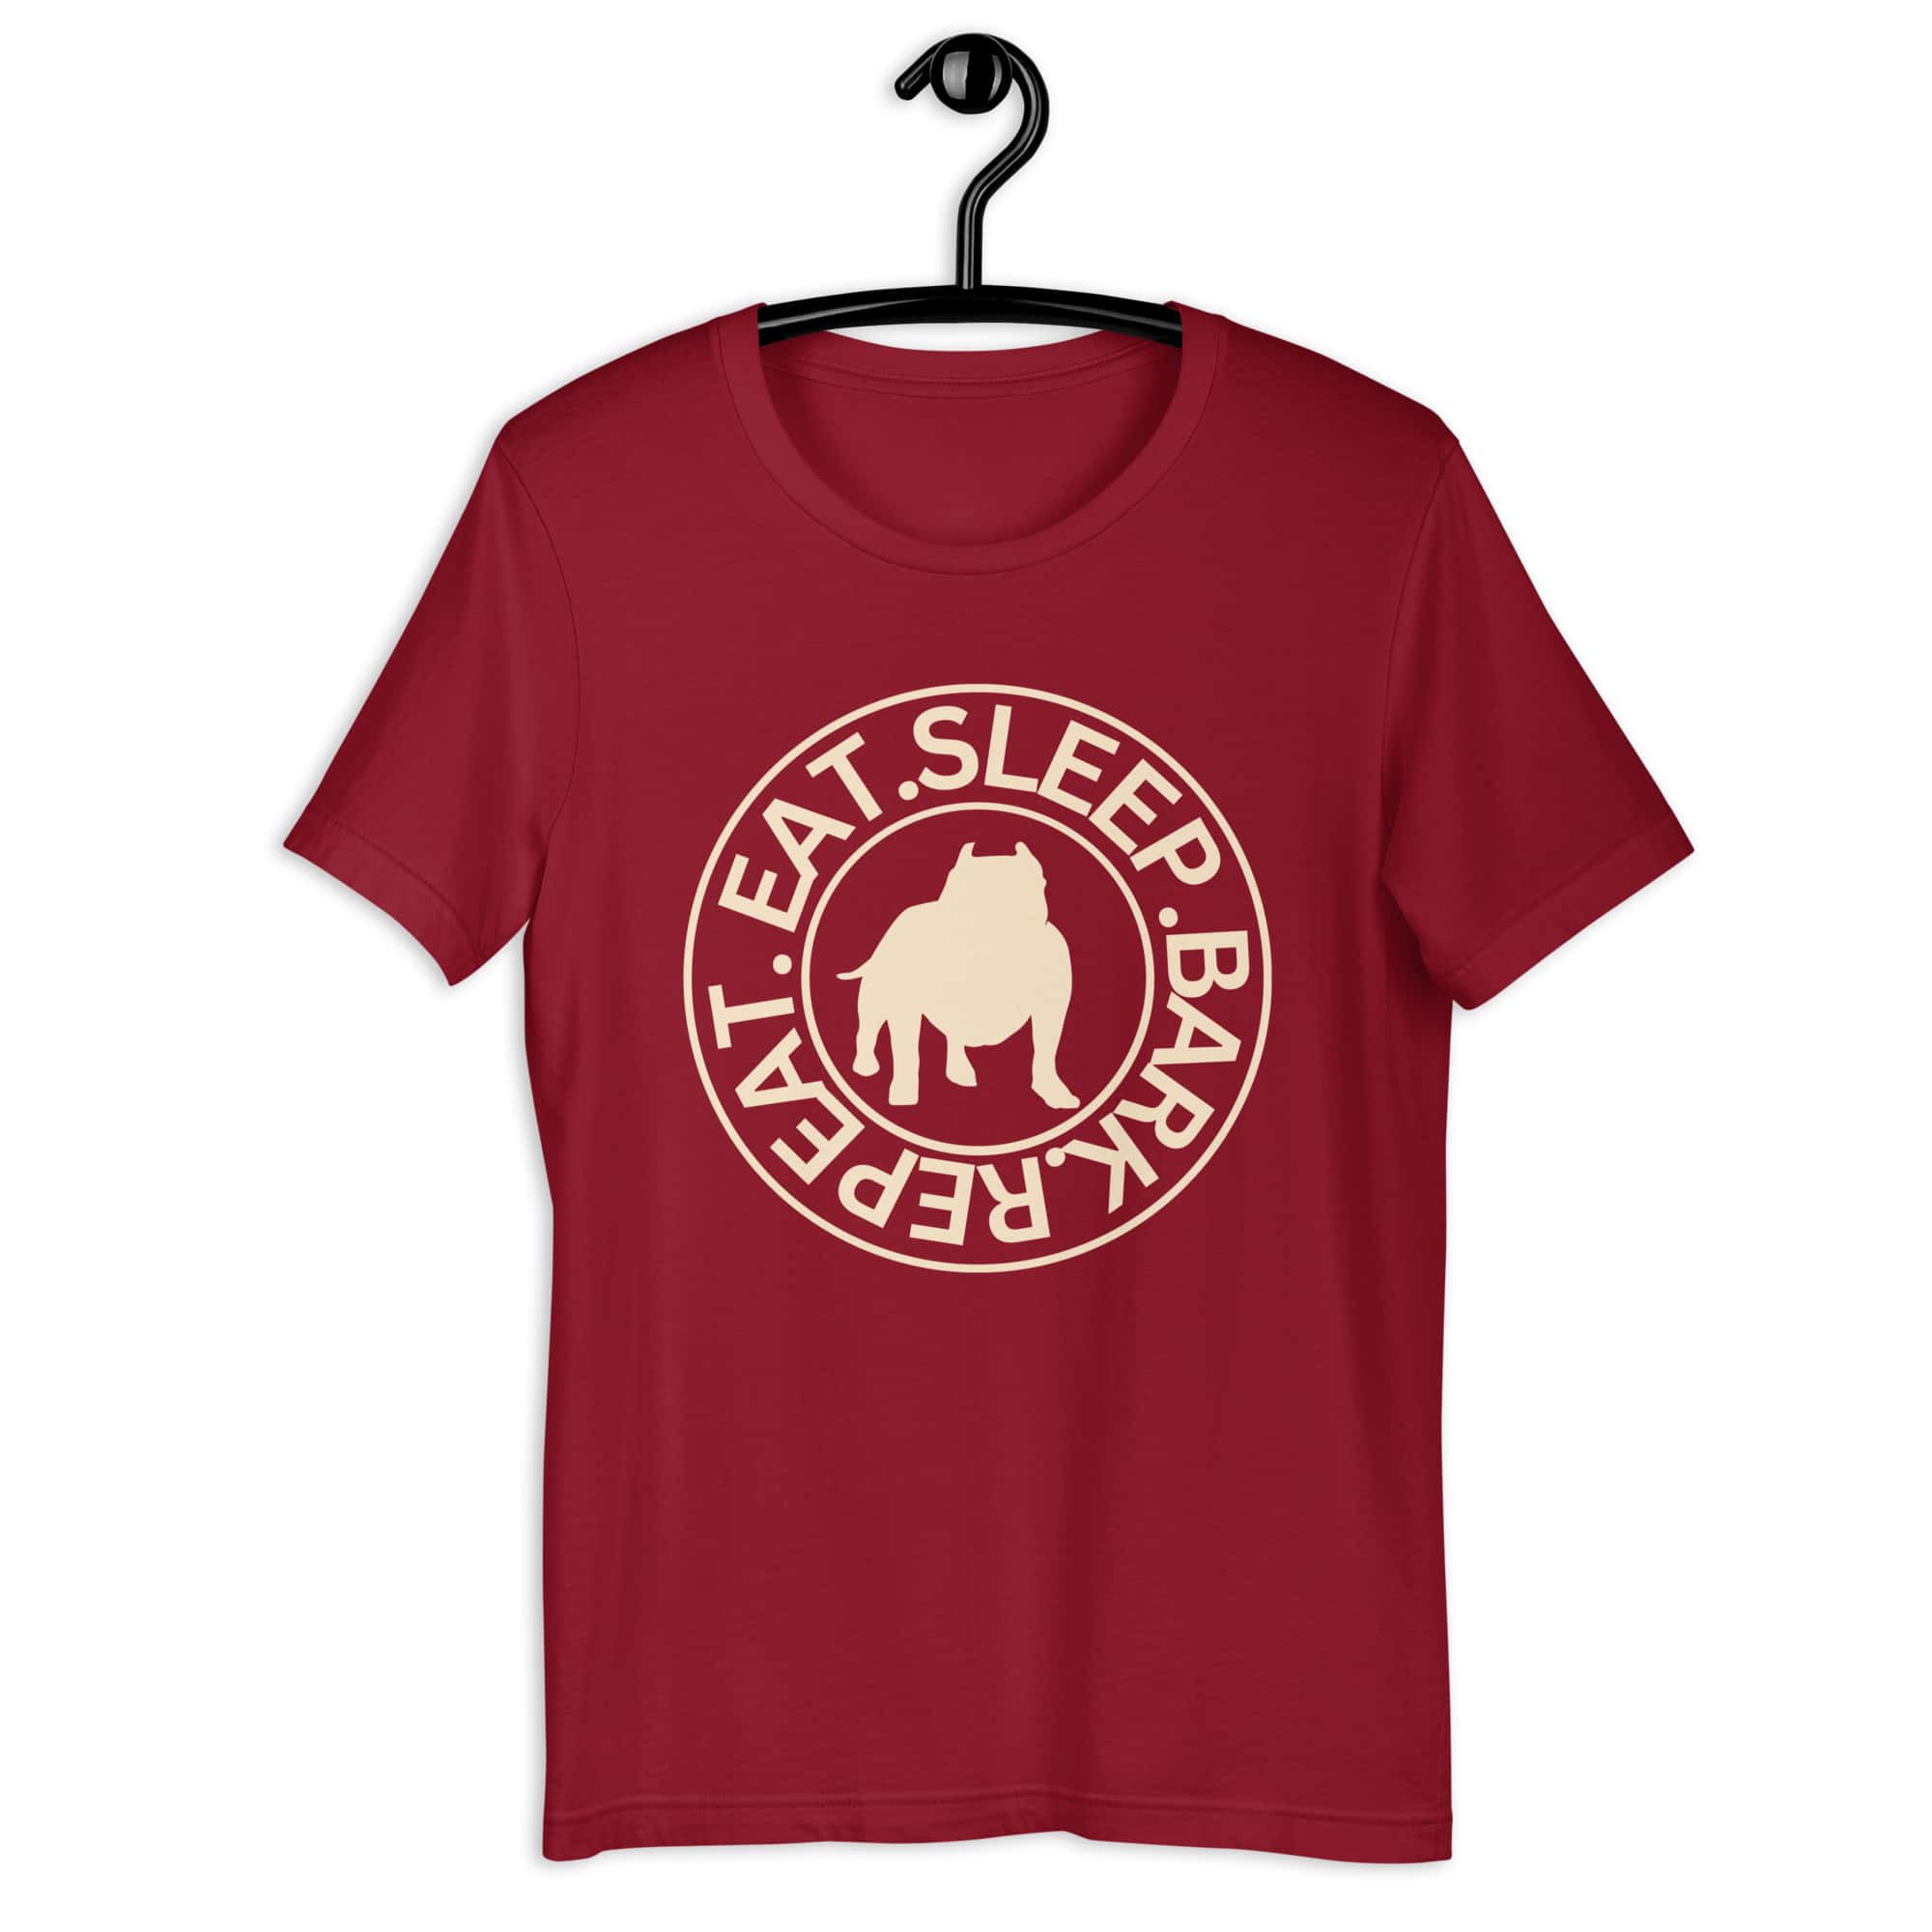 Eat Sleep Bark Repeat Bulldog Unisex T-Shirt. Cardinal